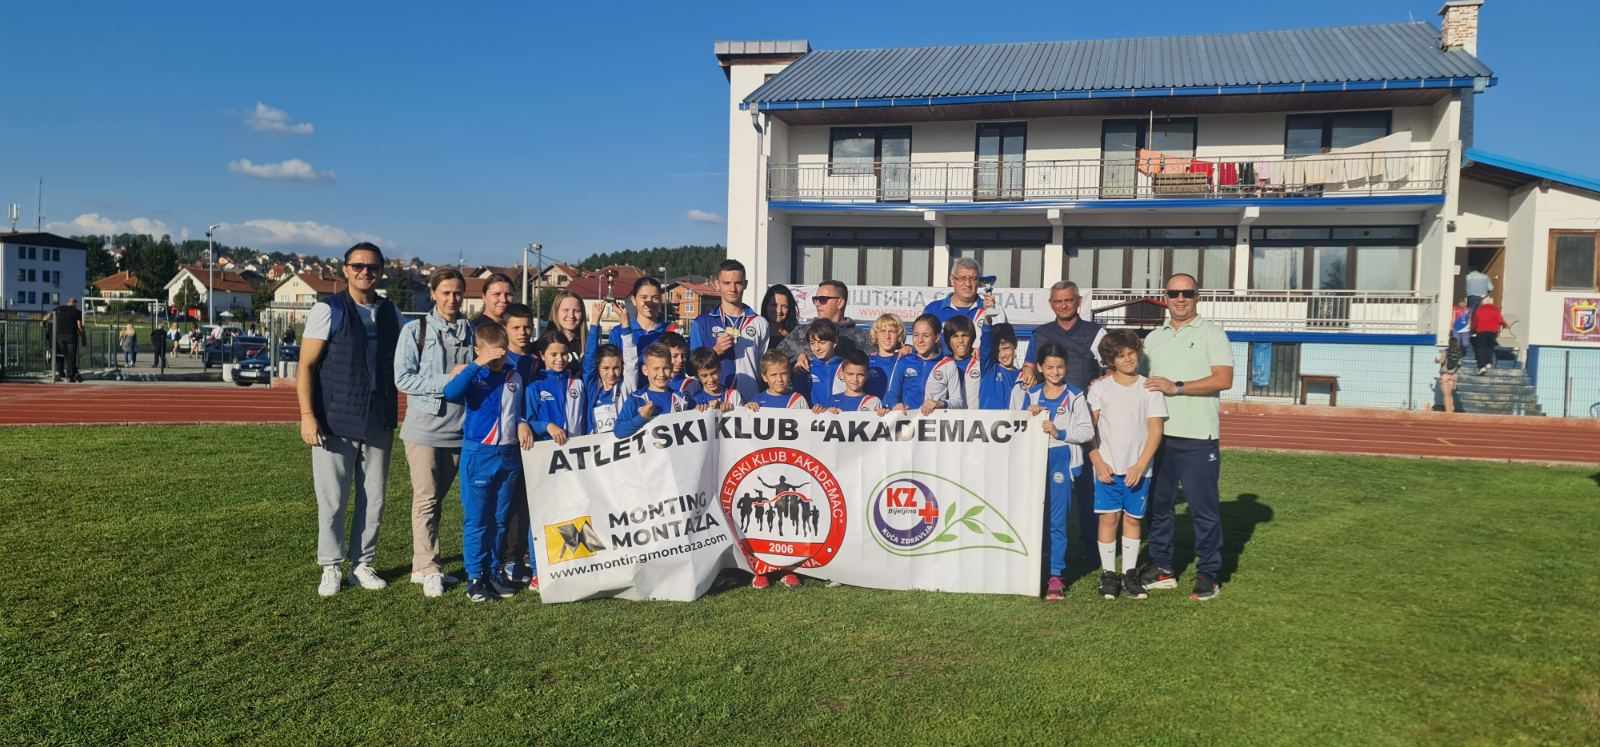 AK AKADEMAC: Mladi atletičari su prvaci Republike Srpske